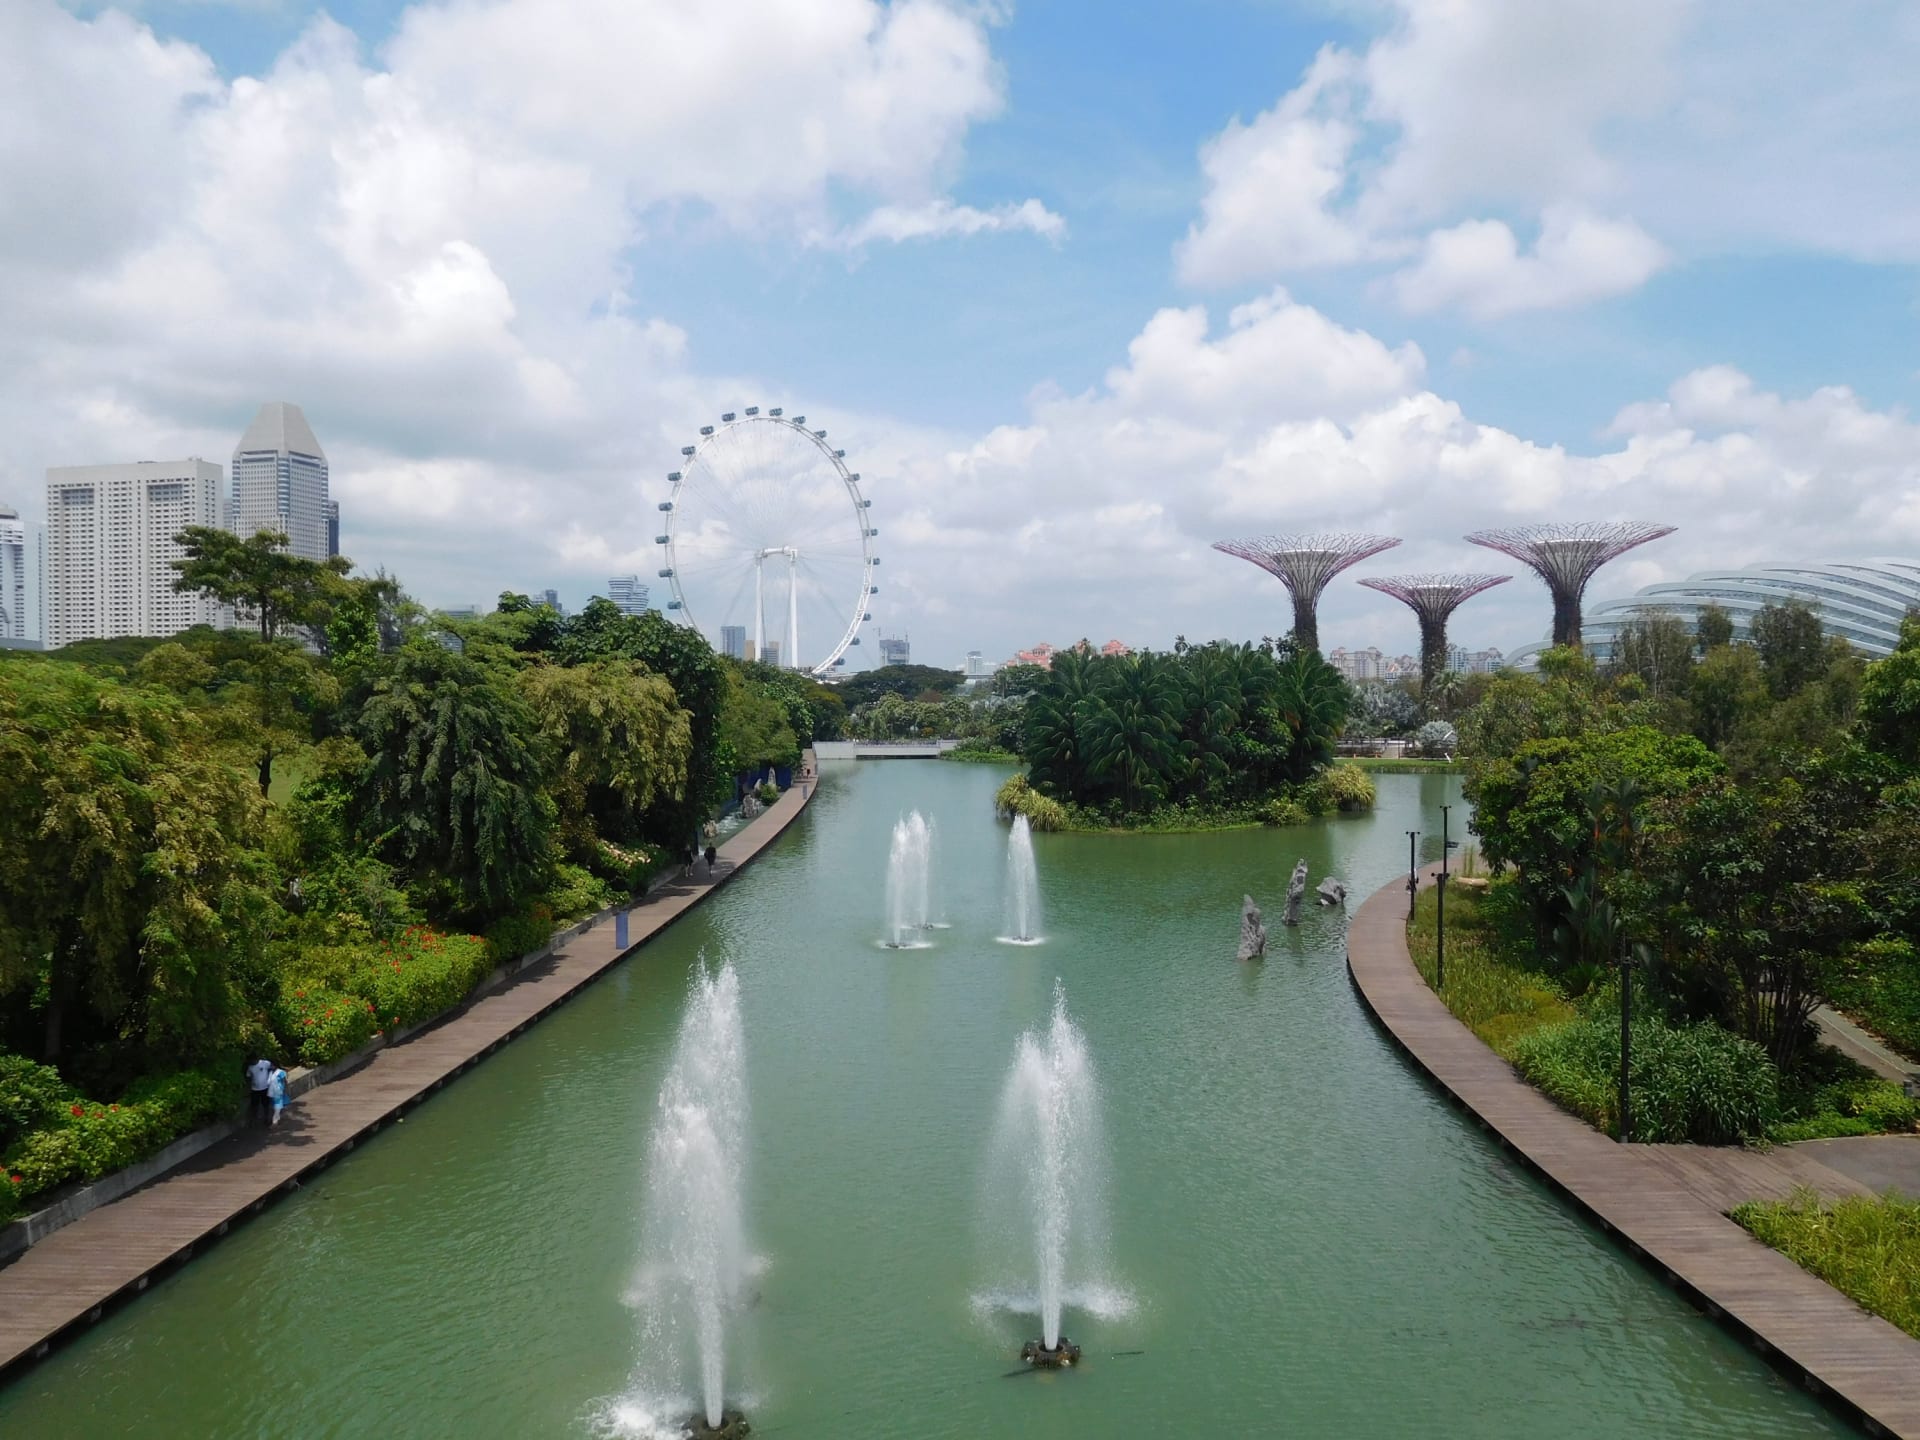 V zahradách Gardens by the Bay se dá strávit spousta času, Singapur